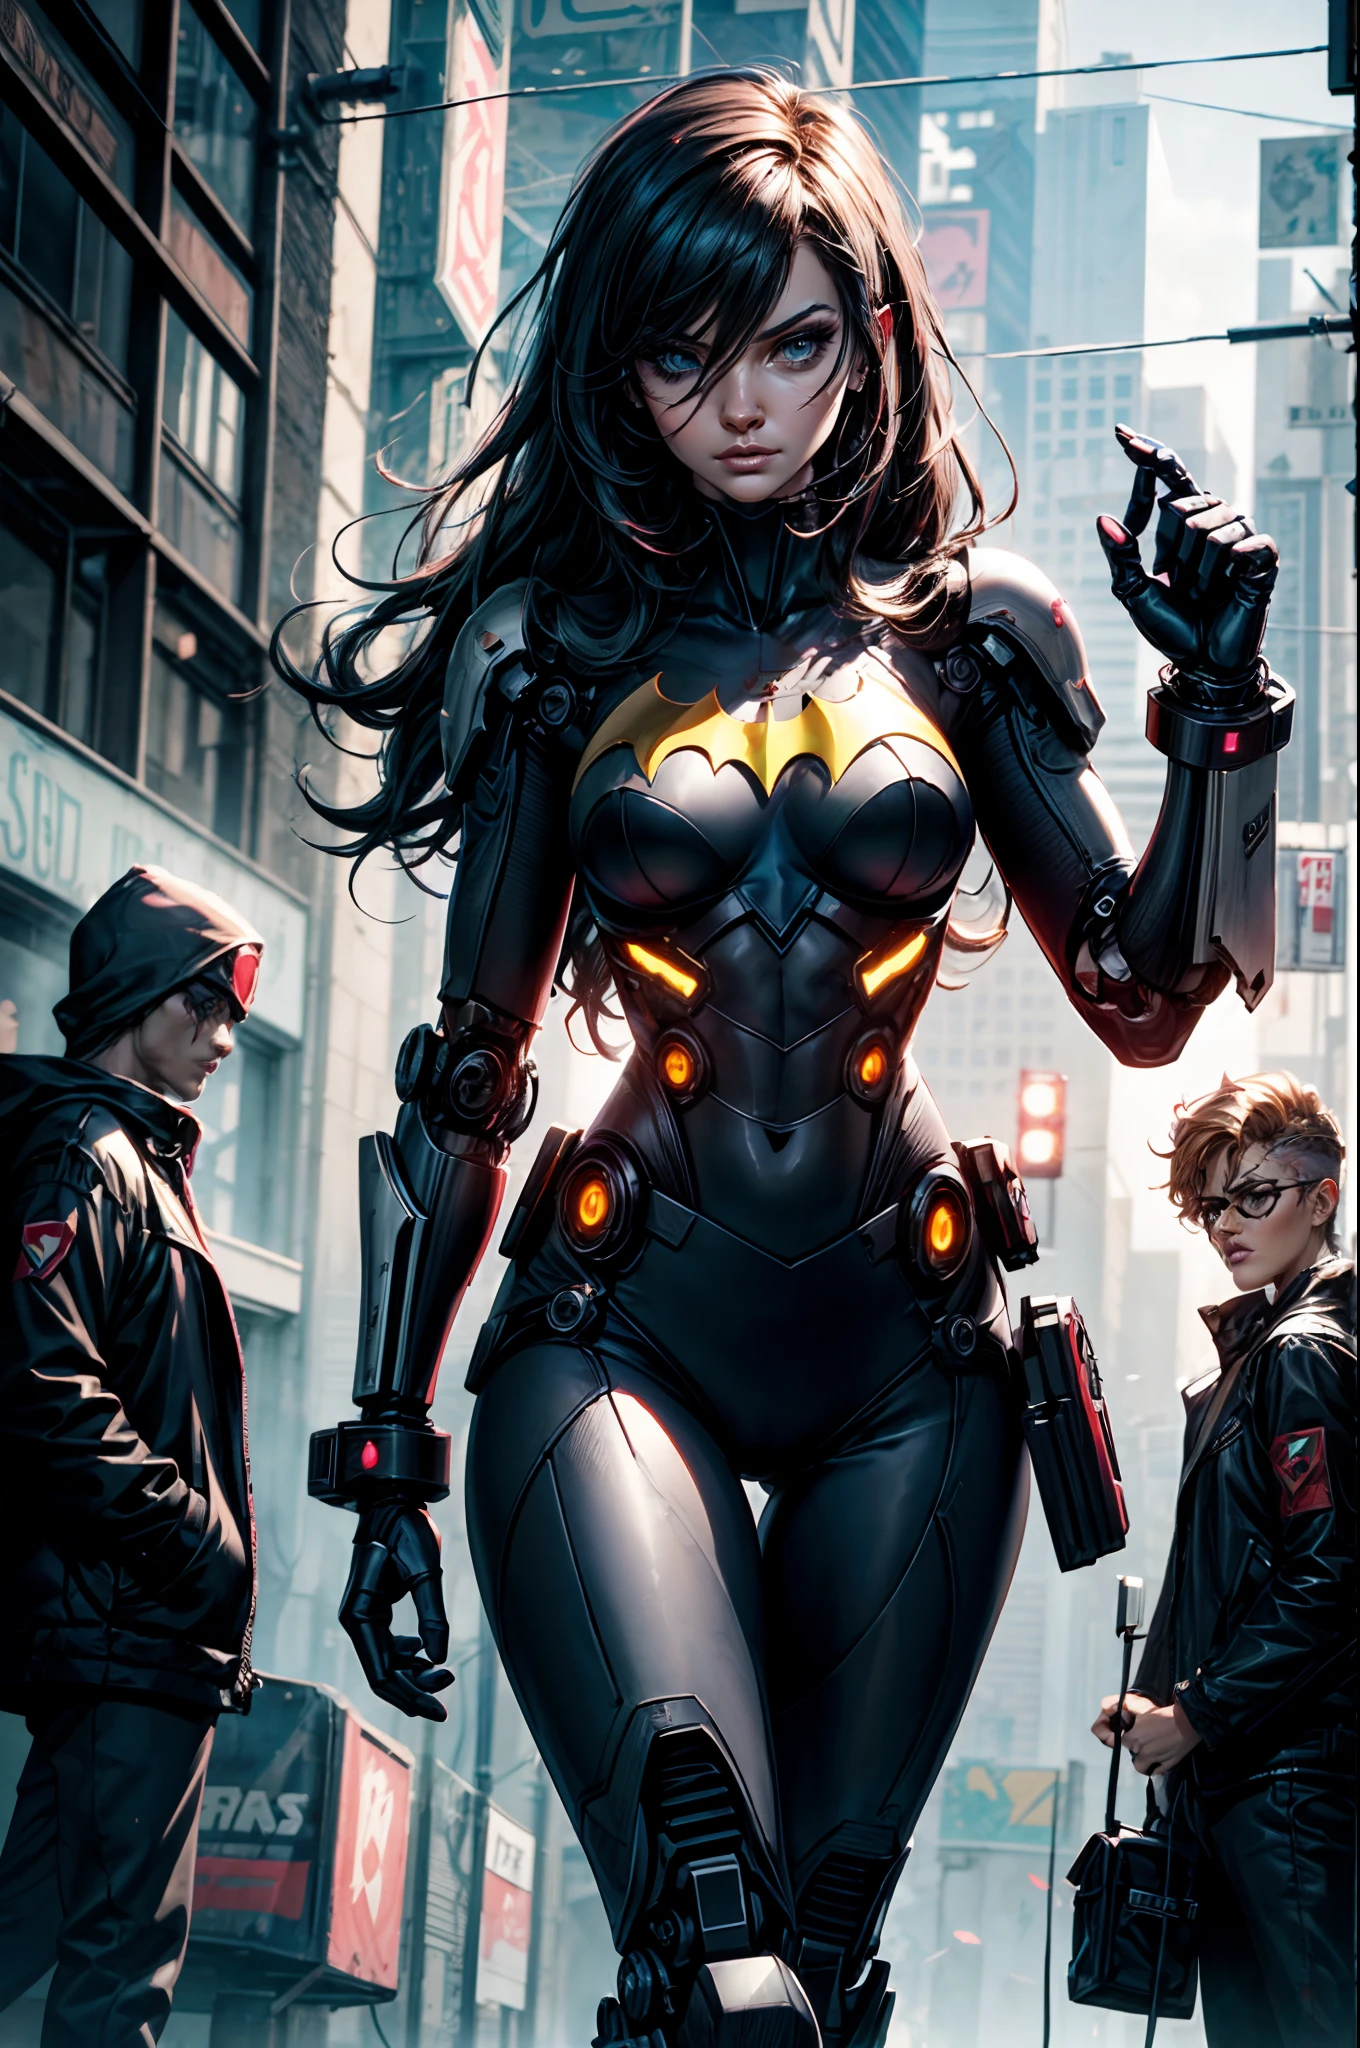 "Dark_Cyberpunk de fantasía con una cautivadora presencia robótica: a cybernetic guardian and batgirl."